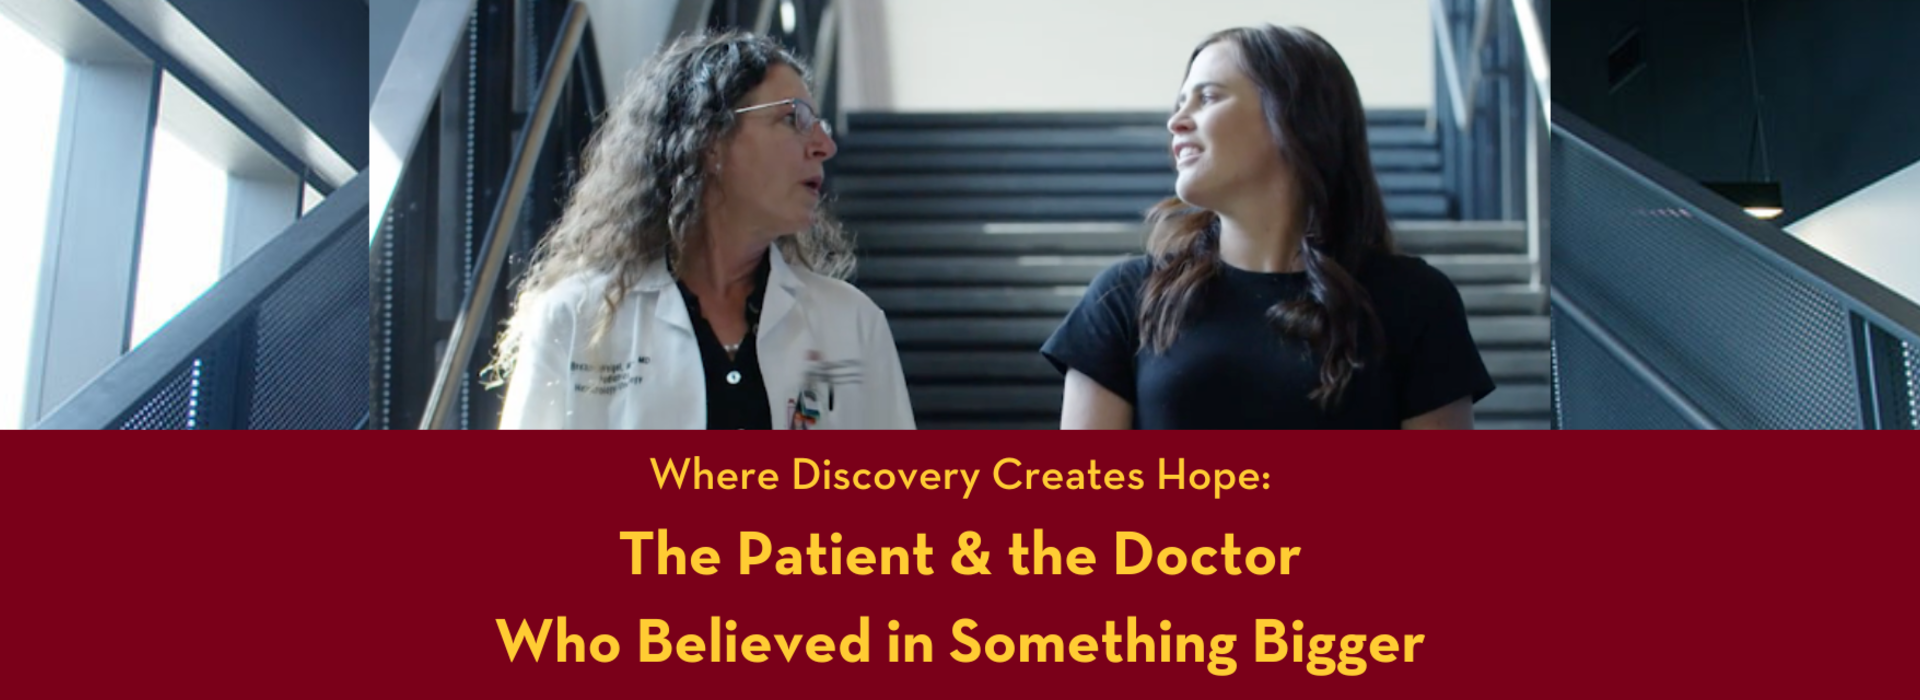 Where Discovery Creates Hope: Sarcoma